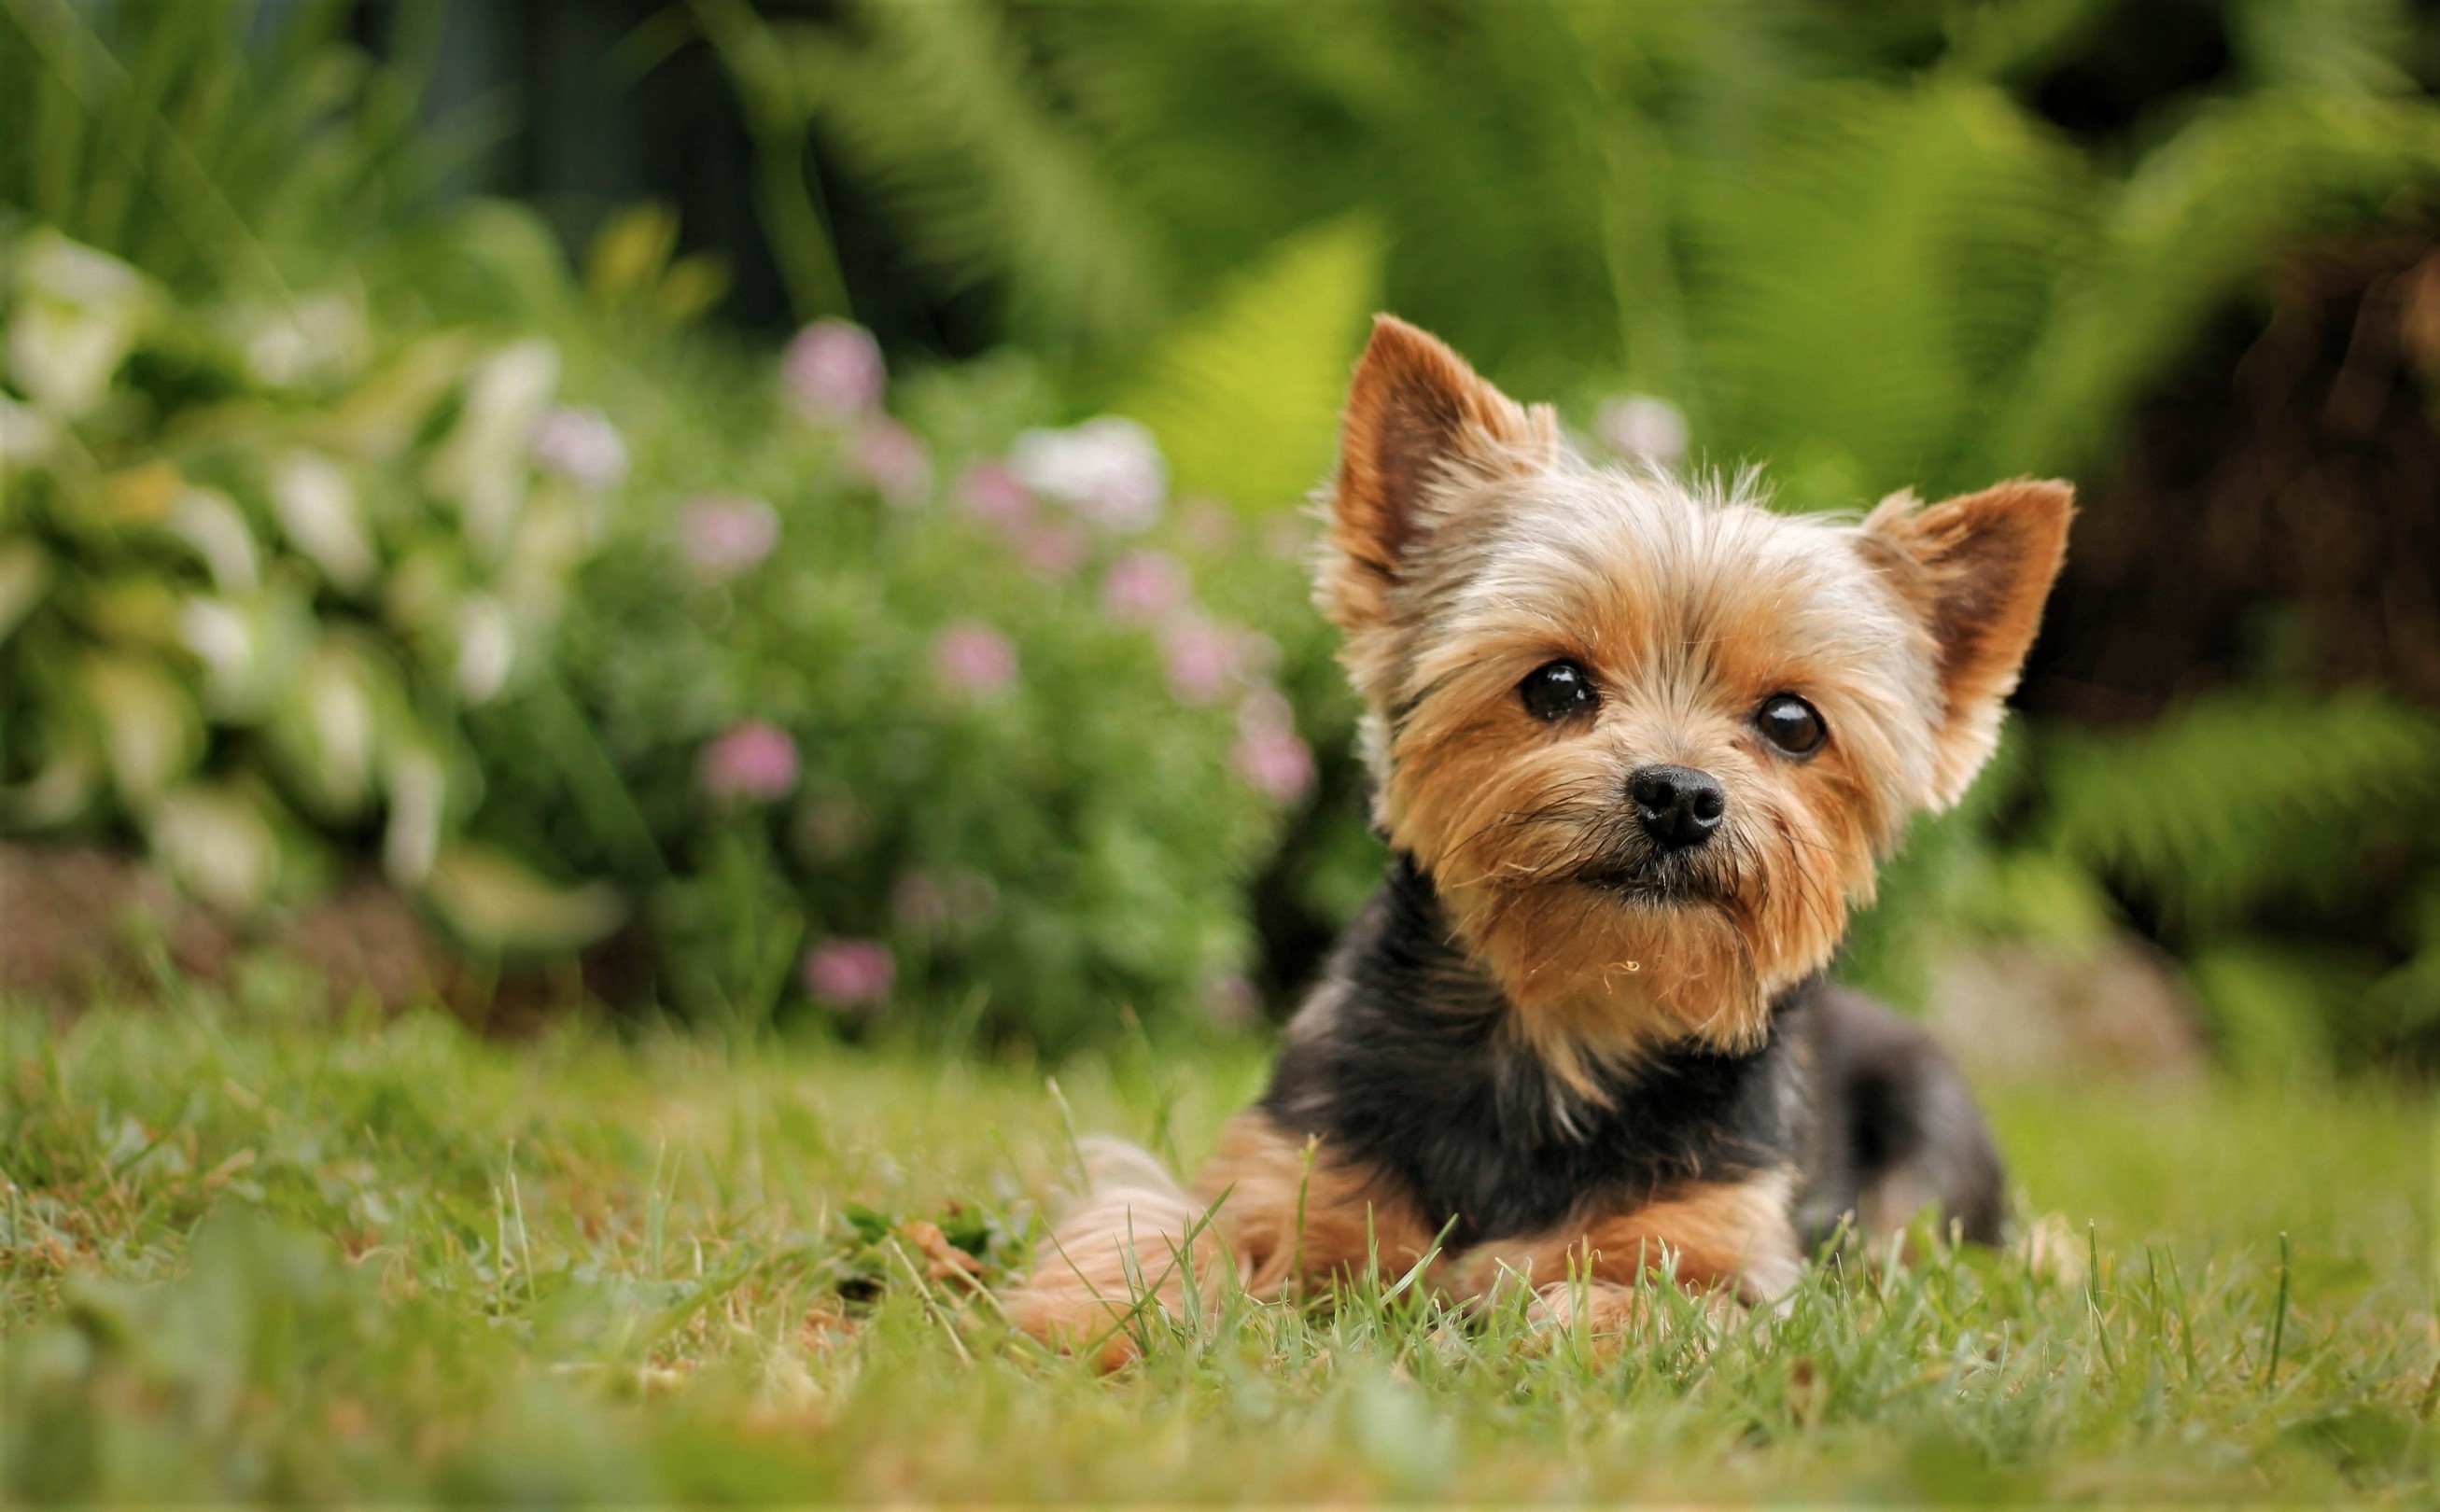 Cute Dog Grass Pet Yorkshire Terrier 2614x1620